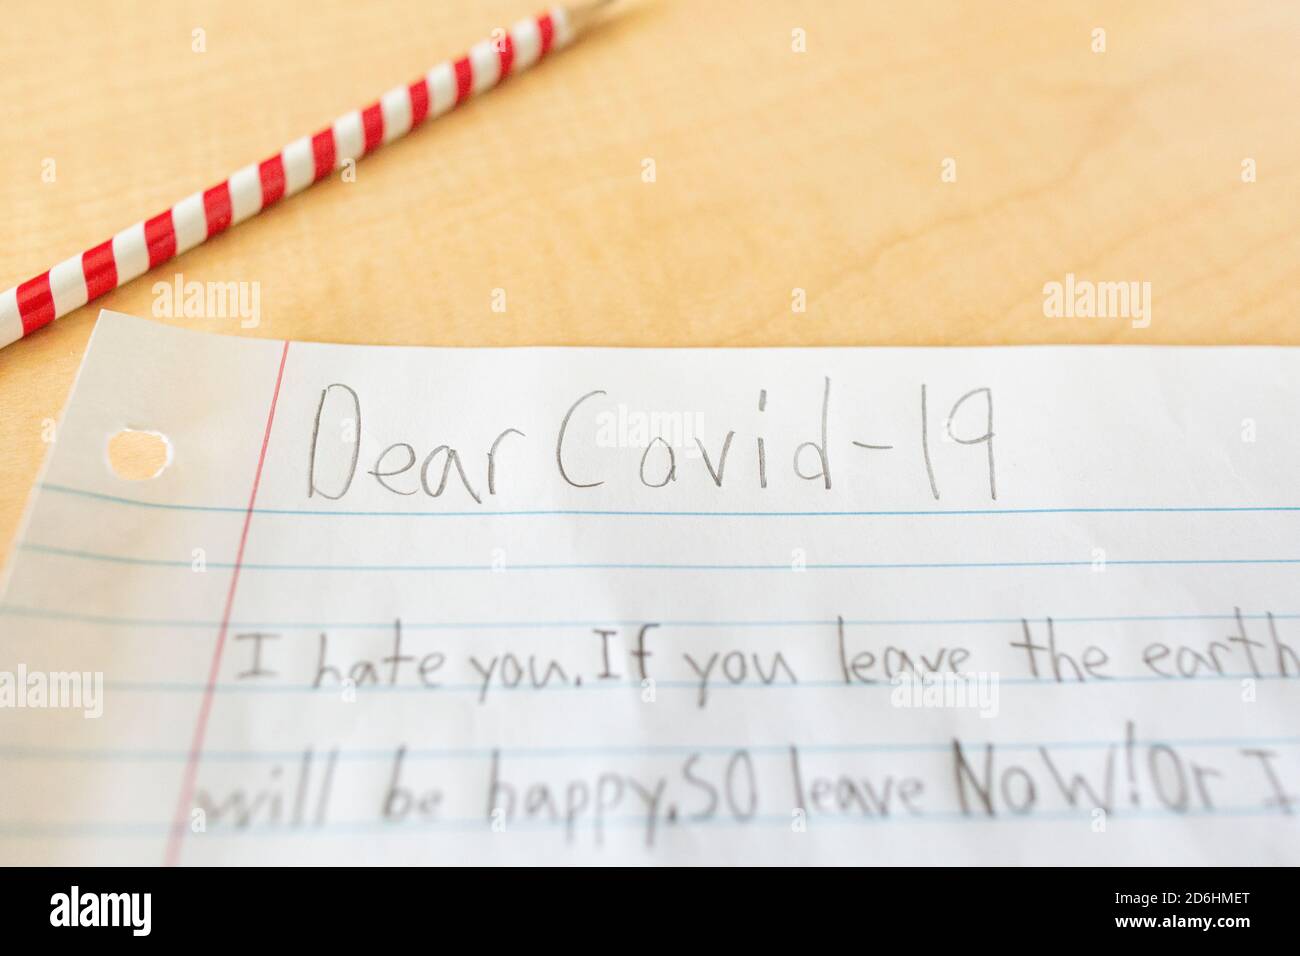 Carta escrita por Student a Covid-19 durante la pandemia del Coronavirus Foto de stock